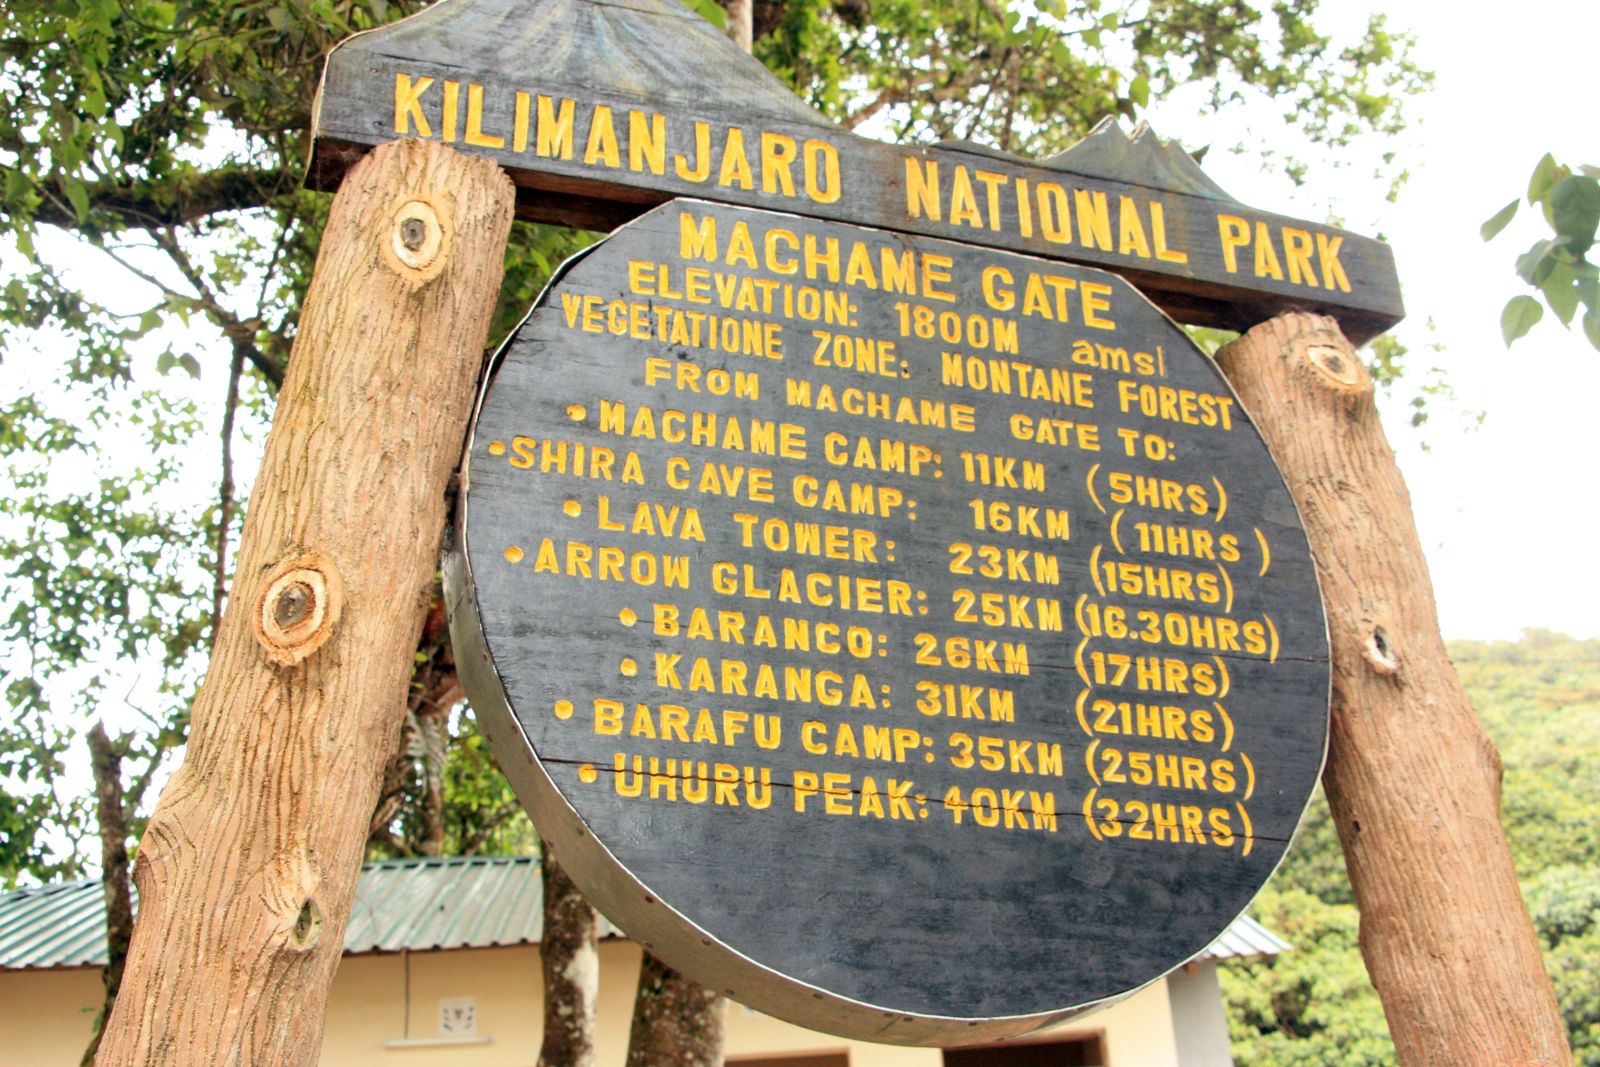 Wir wollen den Kilimanjaro über die Machame Route besteigen.